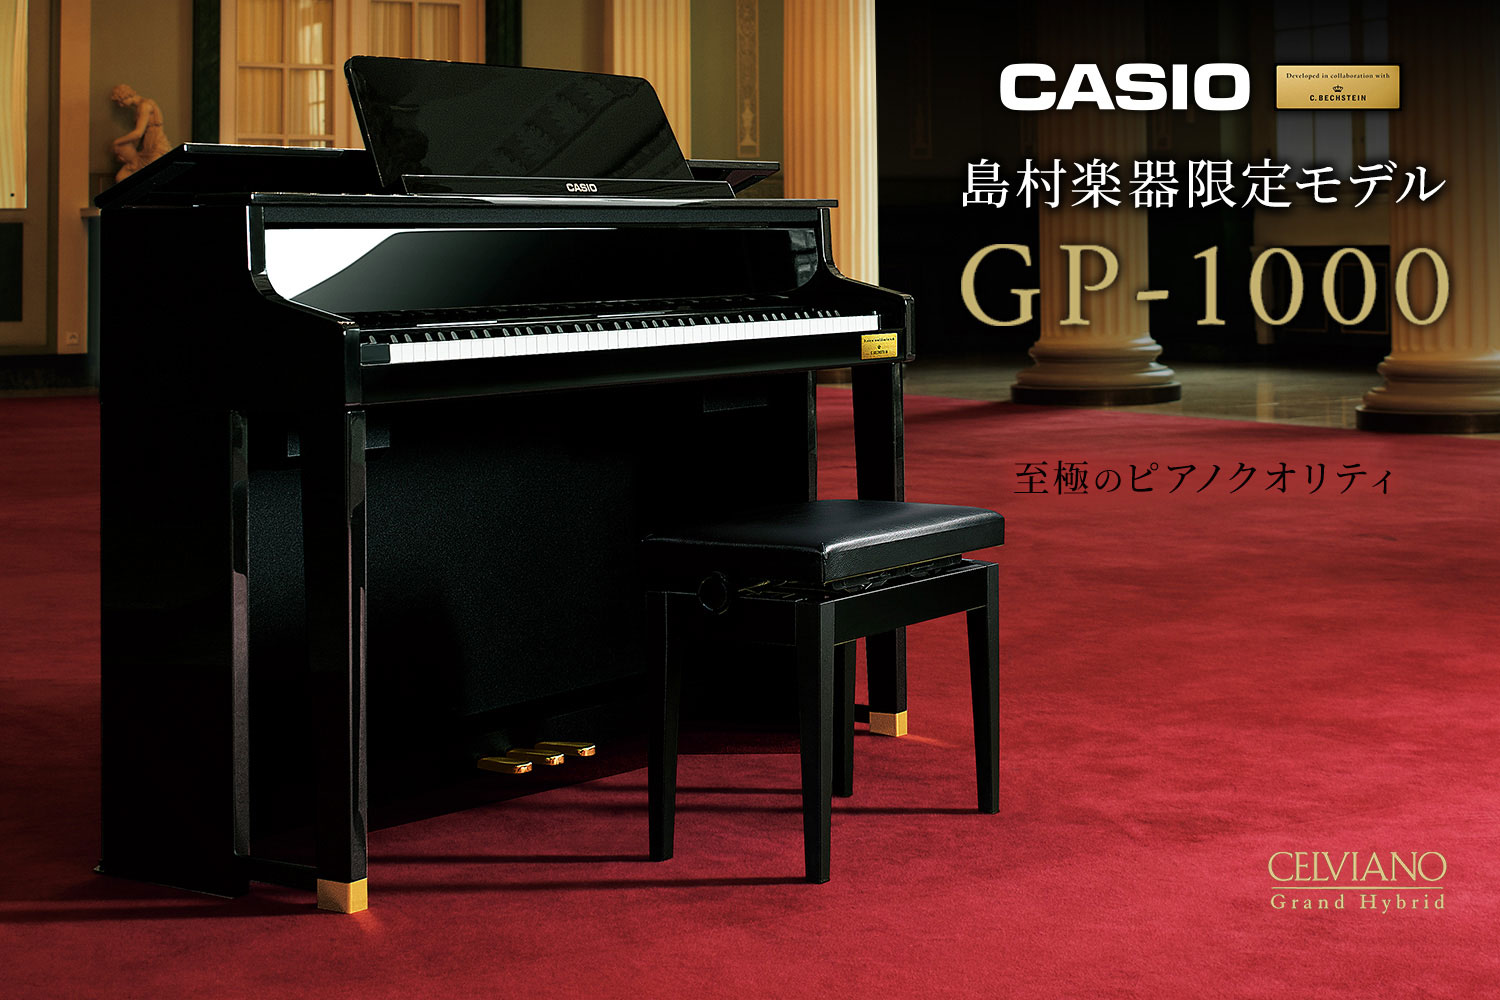 【入荷情報】CASIO×C.ベヒシュタイン コラボレーション電子ピアノ島村楽器限定モデル「GP-1000」が入荷！